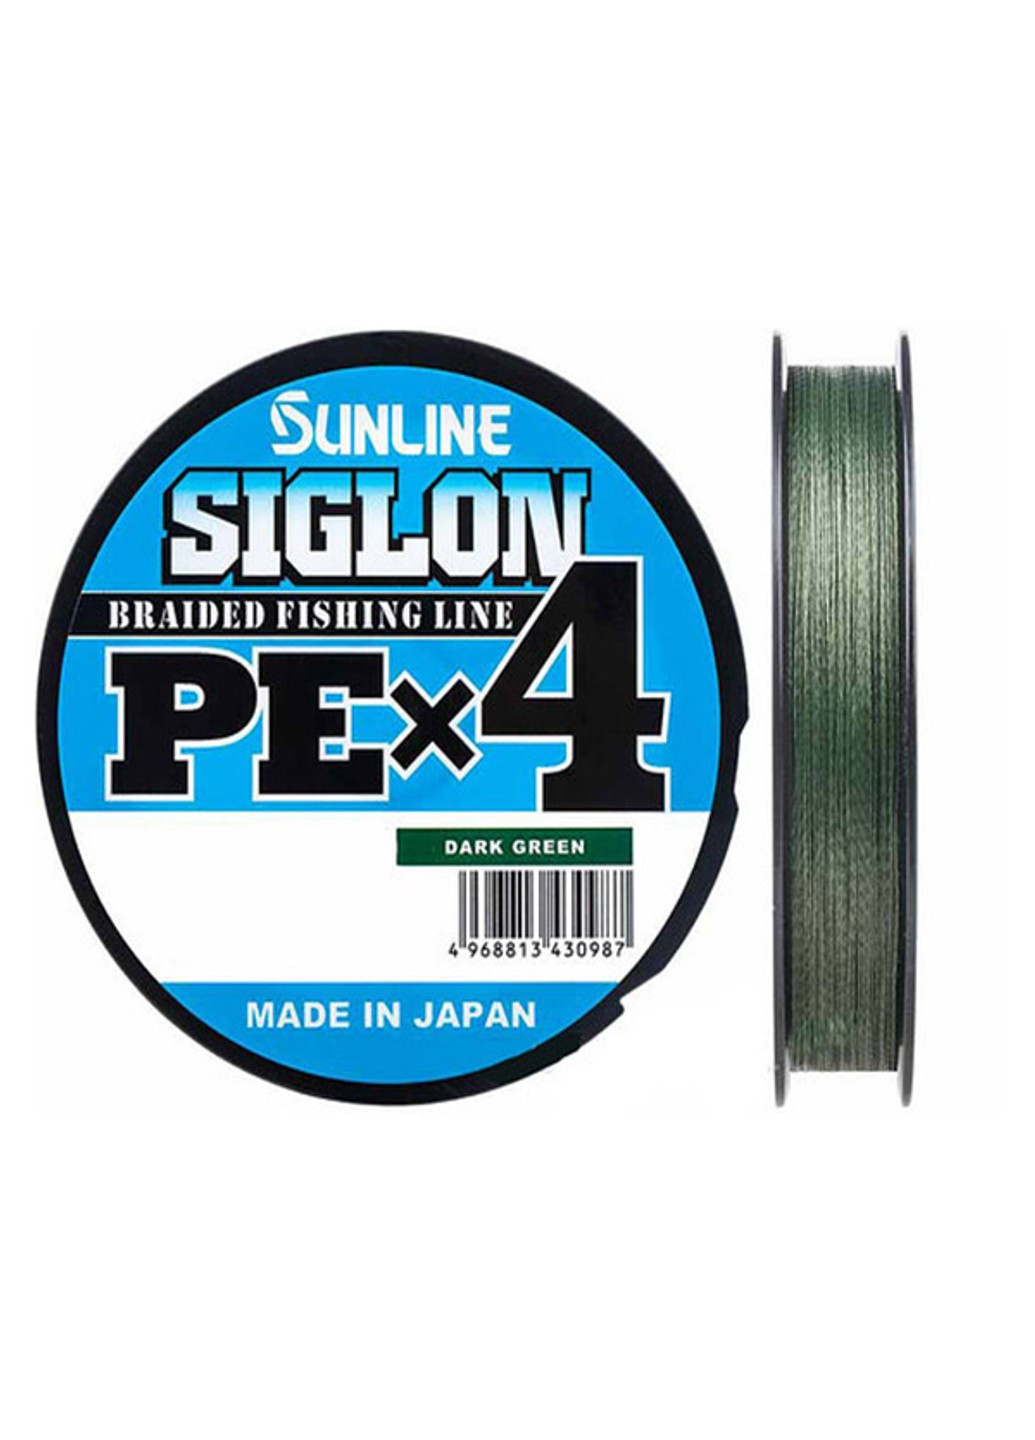 Шнур Siglon PE х4 150m (темн-зел.) #0.6/0.132mm 10lb/4.5kg (1658-09-17) Sunline (252468679)